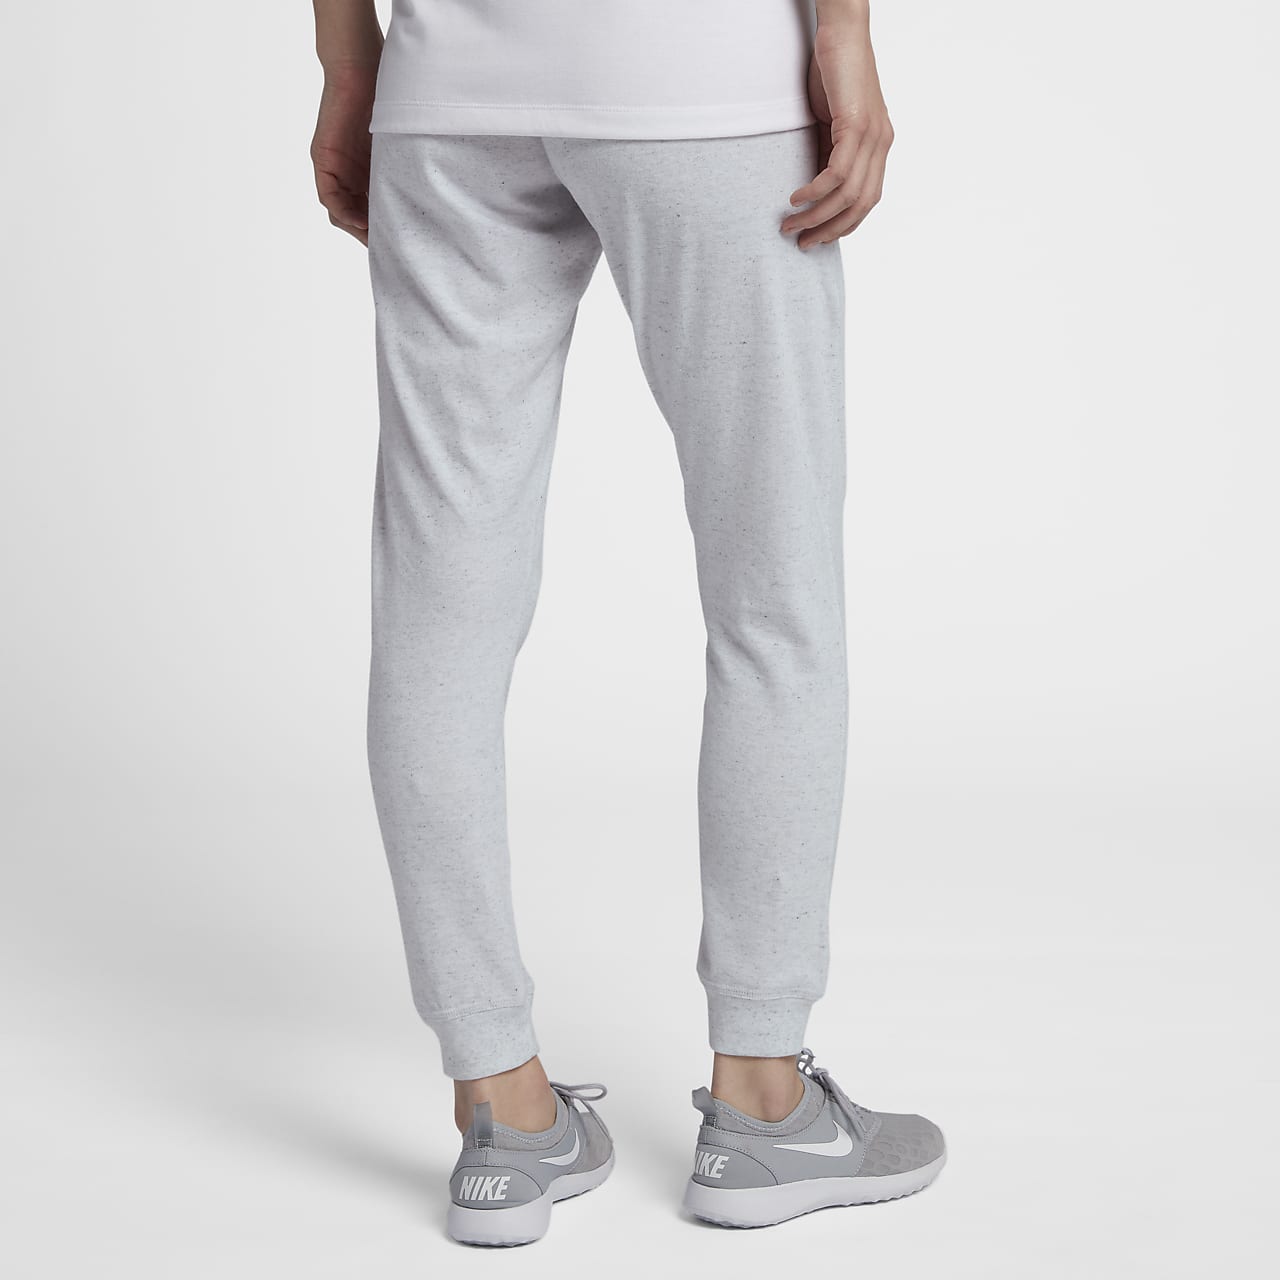 NWT NIKE Womens Gym Vintage Sport Casual Capri Sweatpants Pants gray -  MEDIUM M